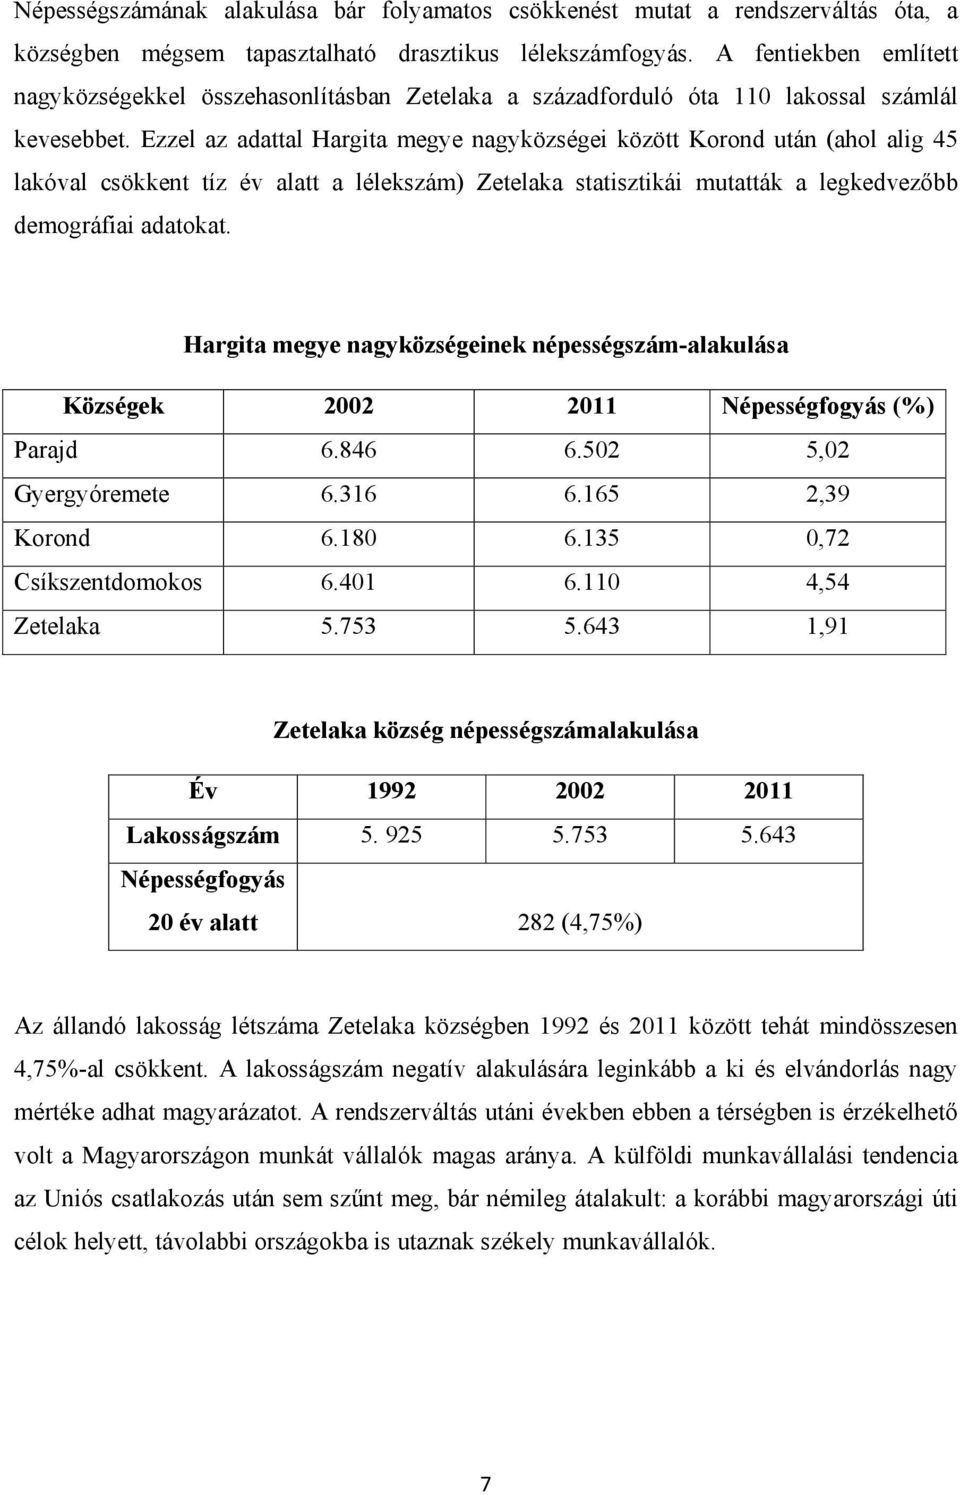 Ezzel az adattal Hargita megye nagyközségei között Korond után (ahol alig 45 lakóval csökkent tíz év alatt a lélekszám) Zetelaka statisztikái mutatták a legkedvezőbb demográfiai adatokat.